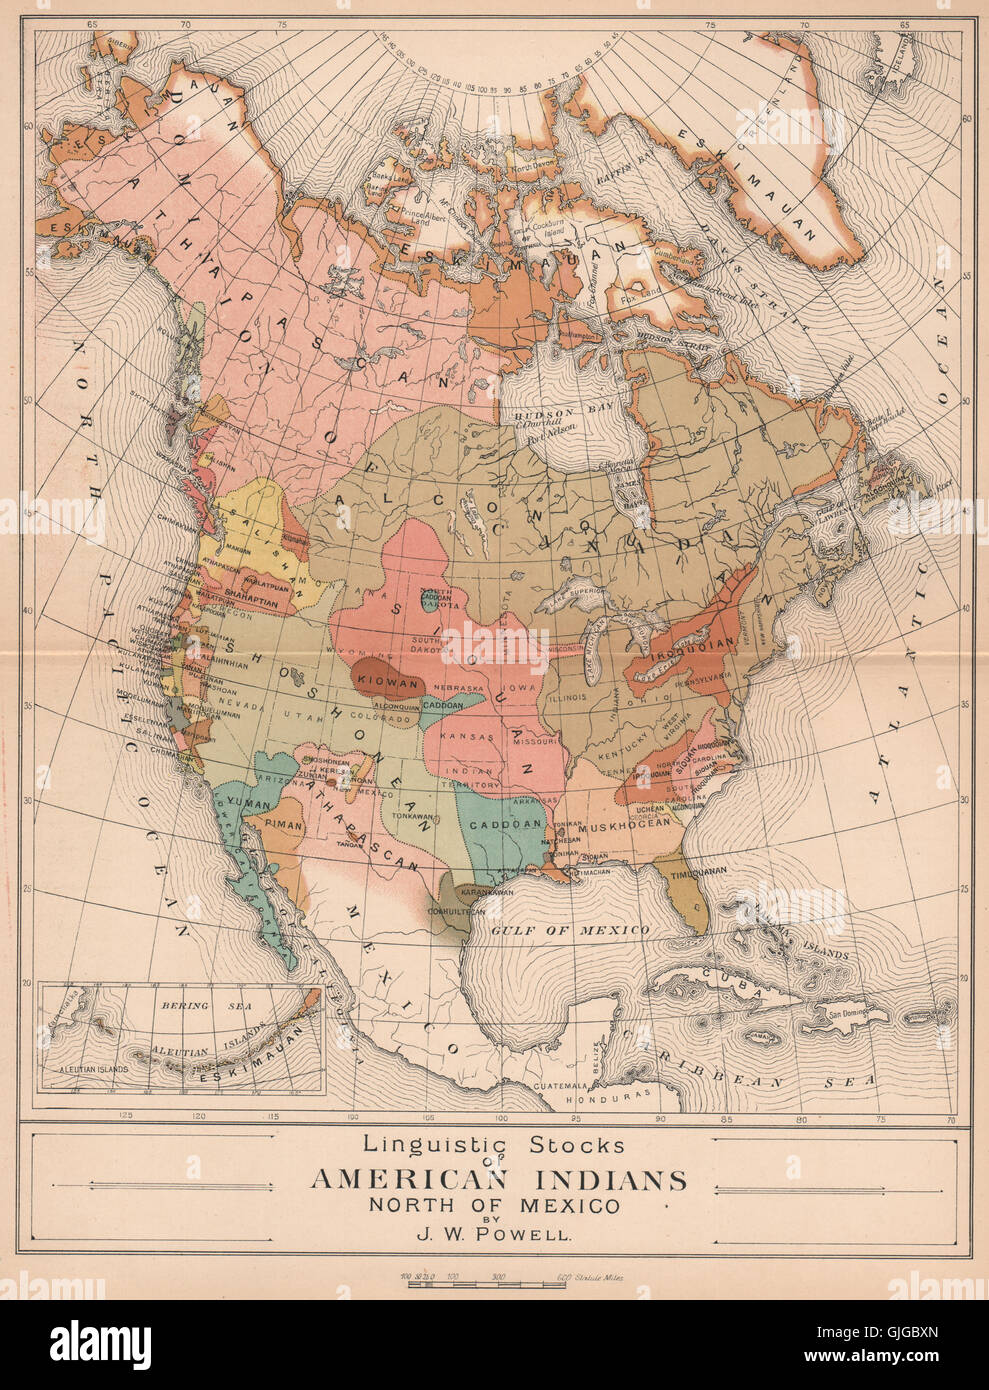 Les stocks de linguistique des Amérindiens. Amérique du Nord, 1885 carte antique Banque D'Images